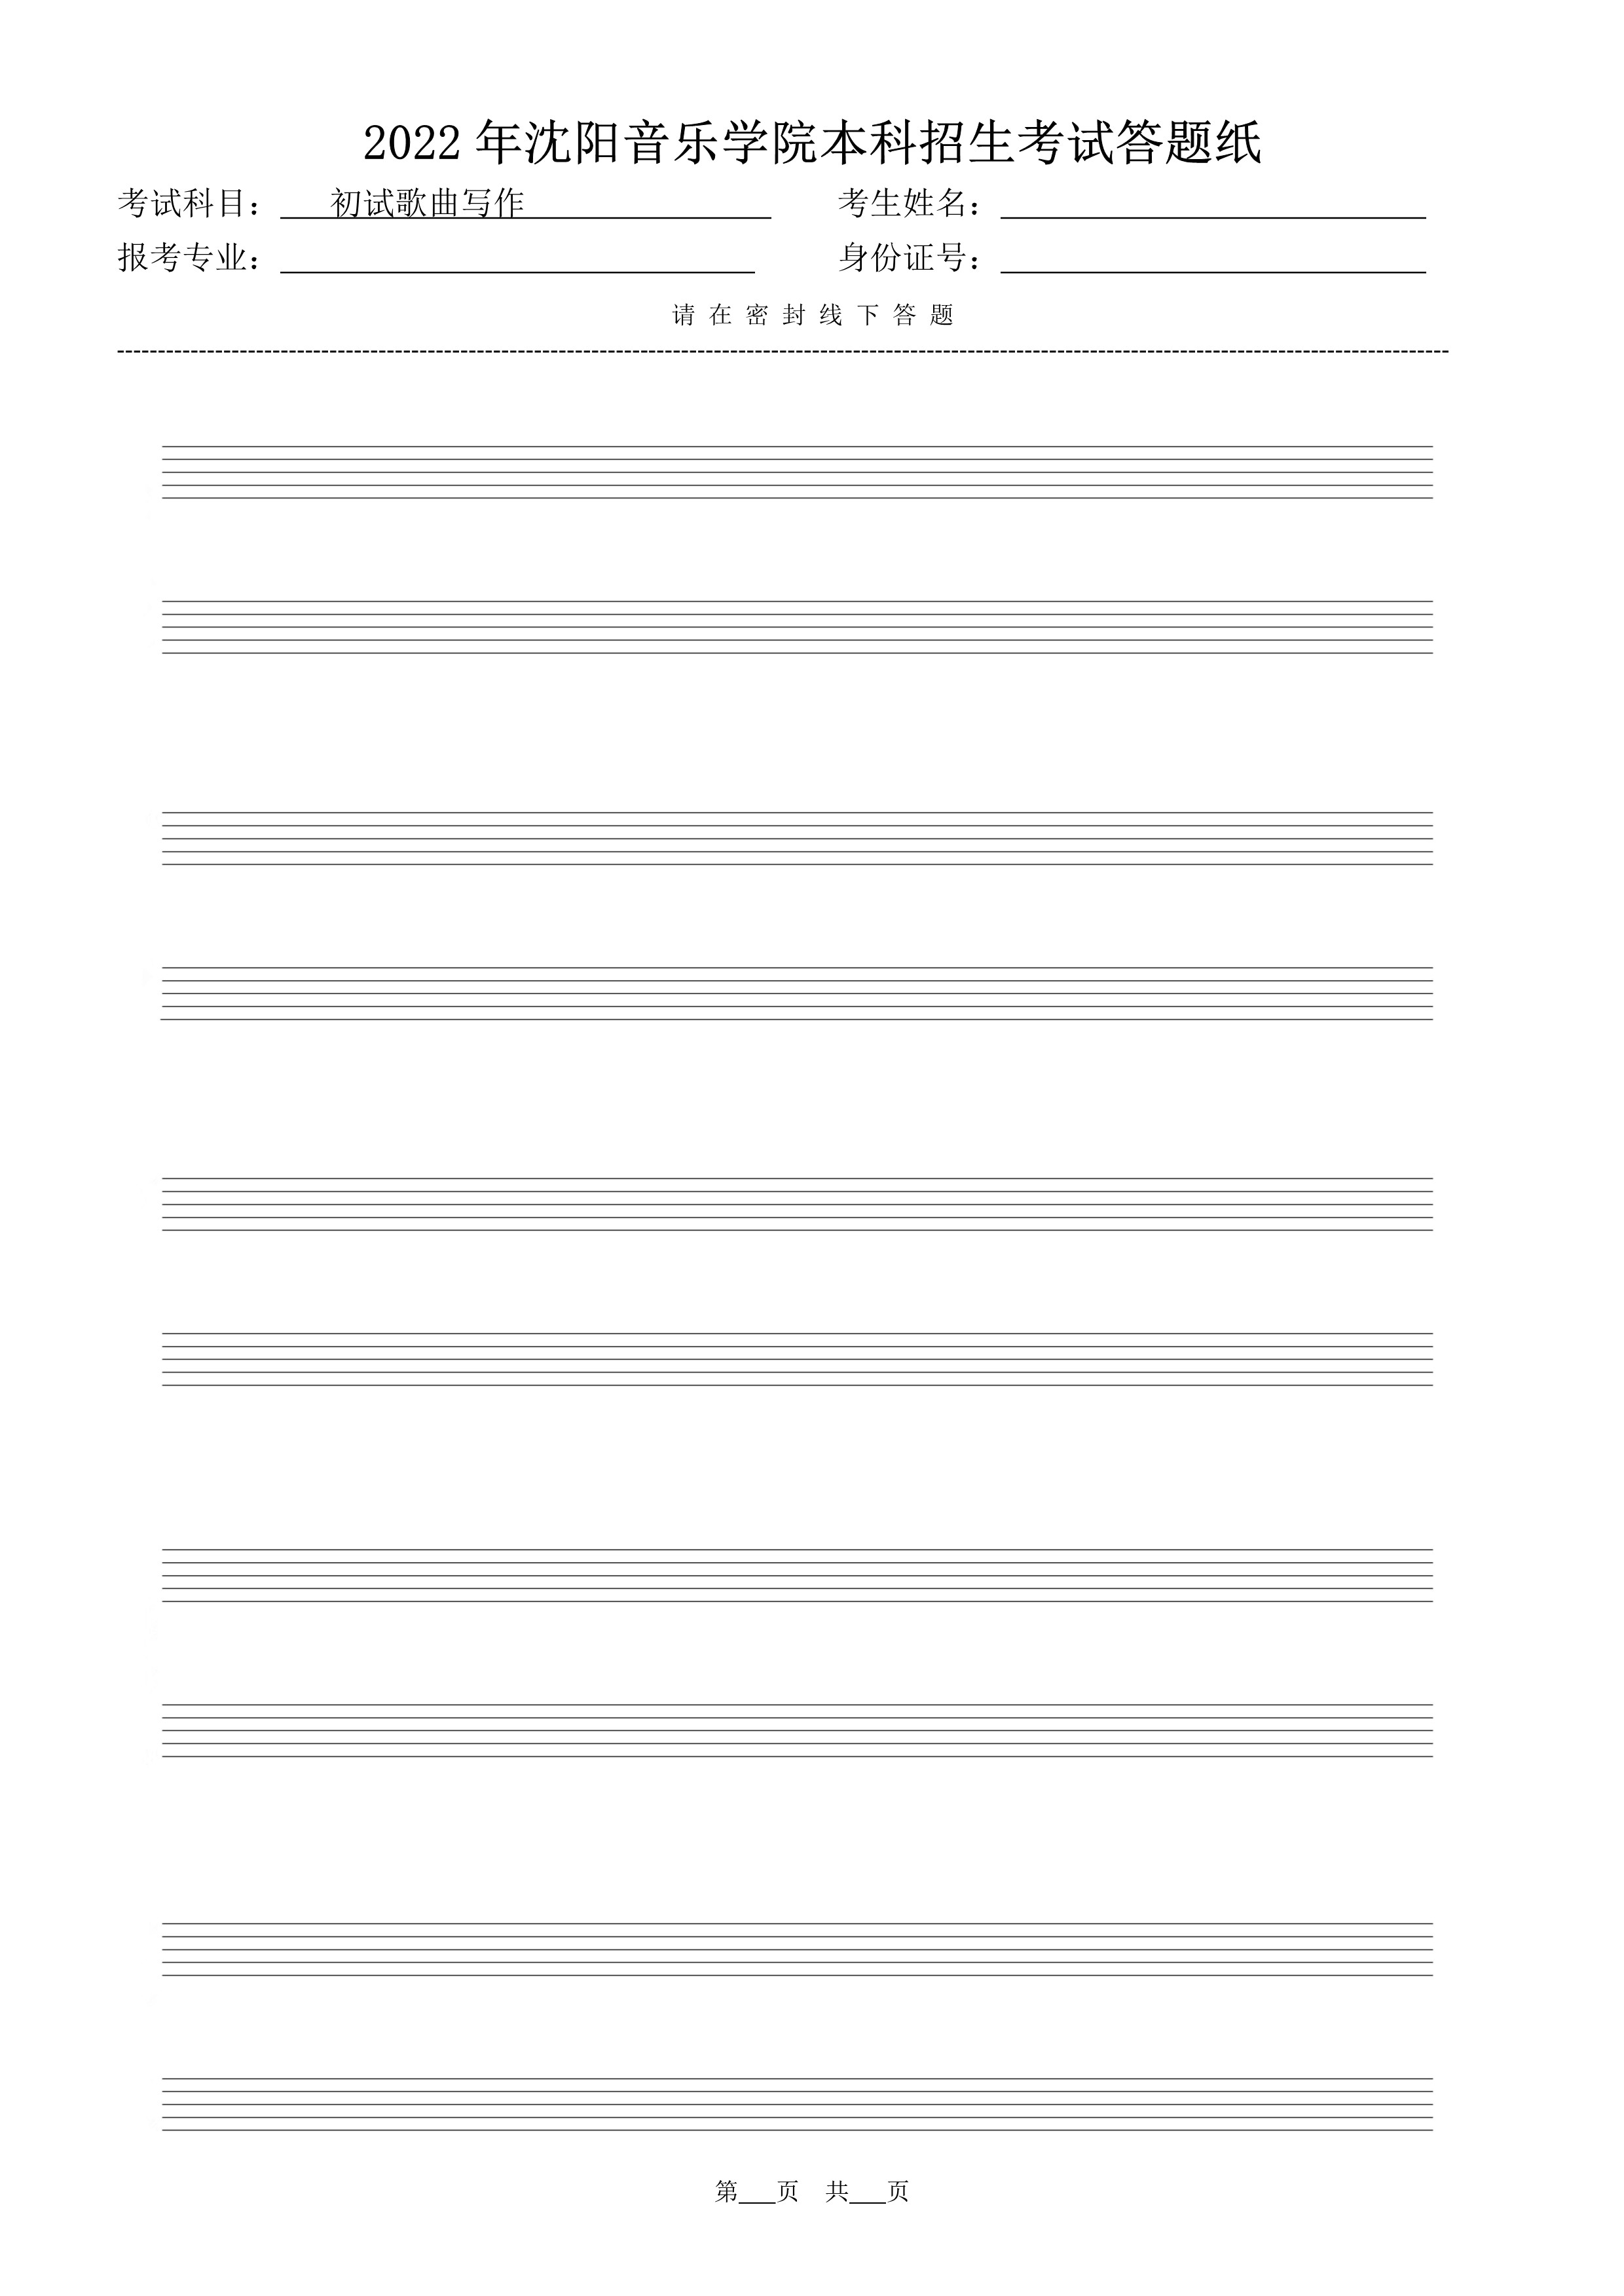 初试歌曲写作答题纸（共5页）_1.jpg